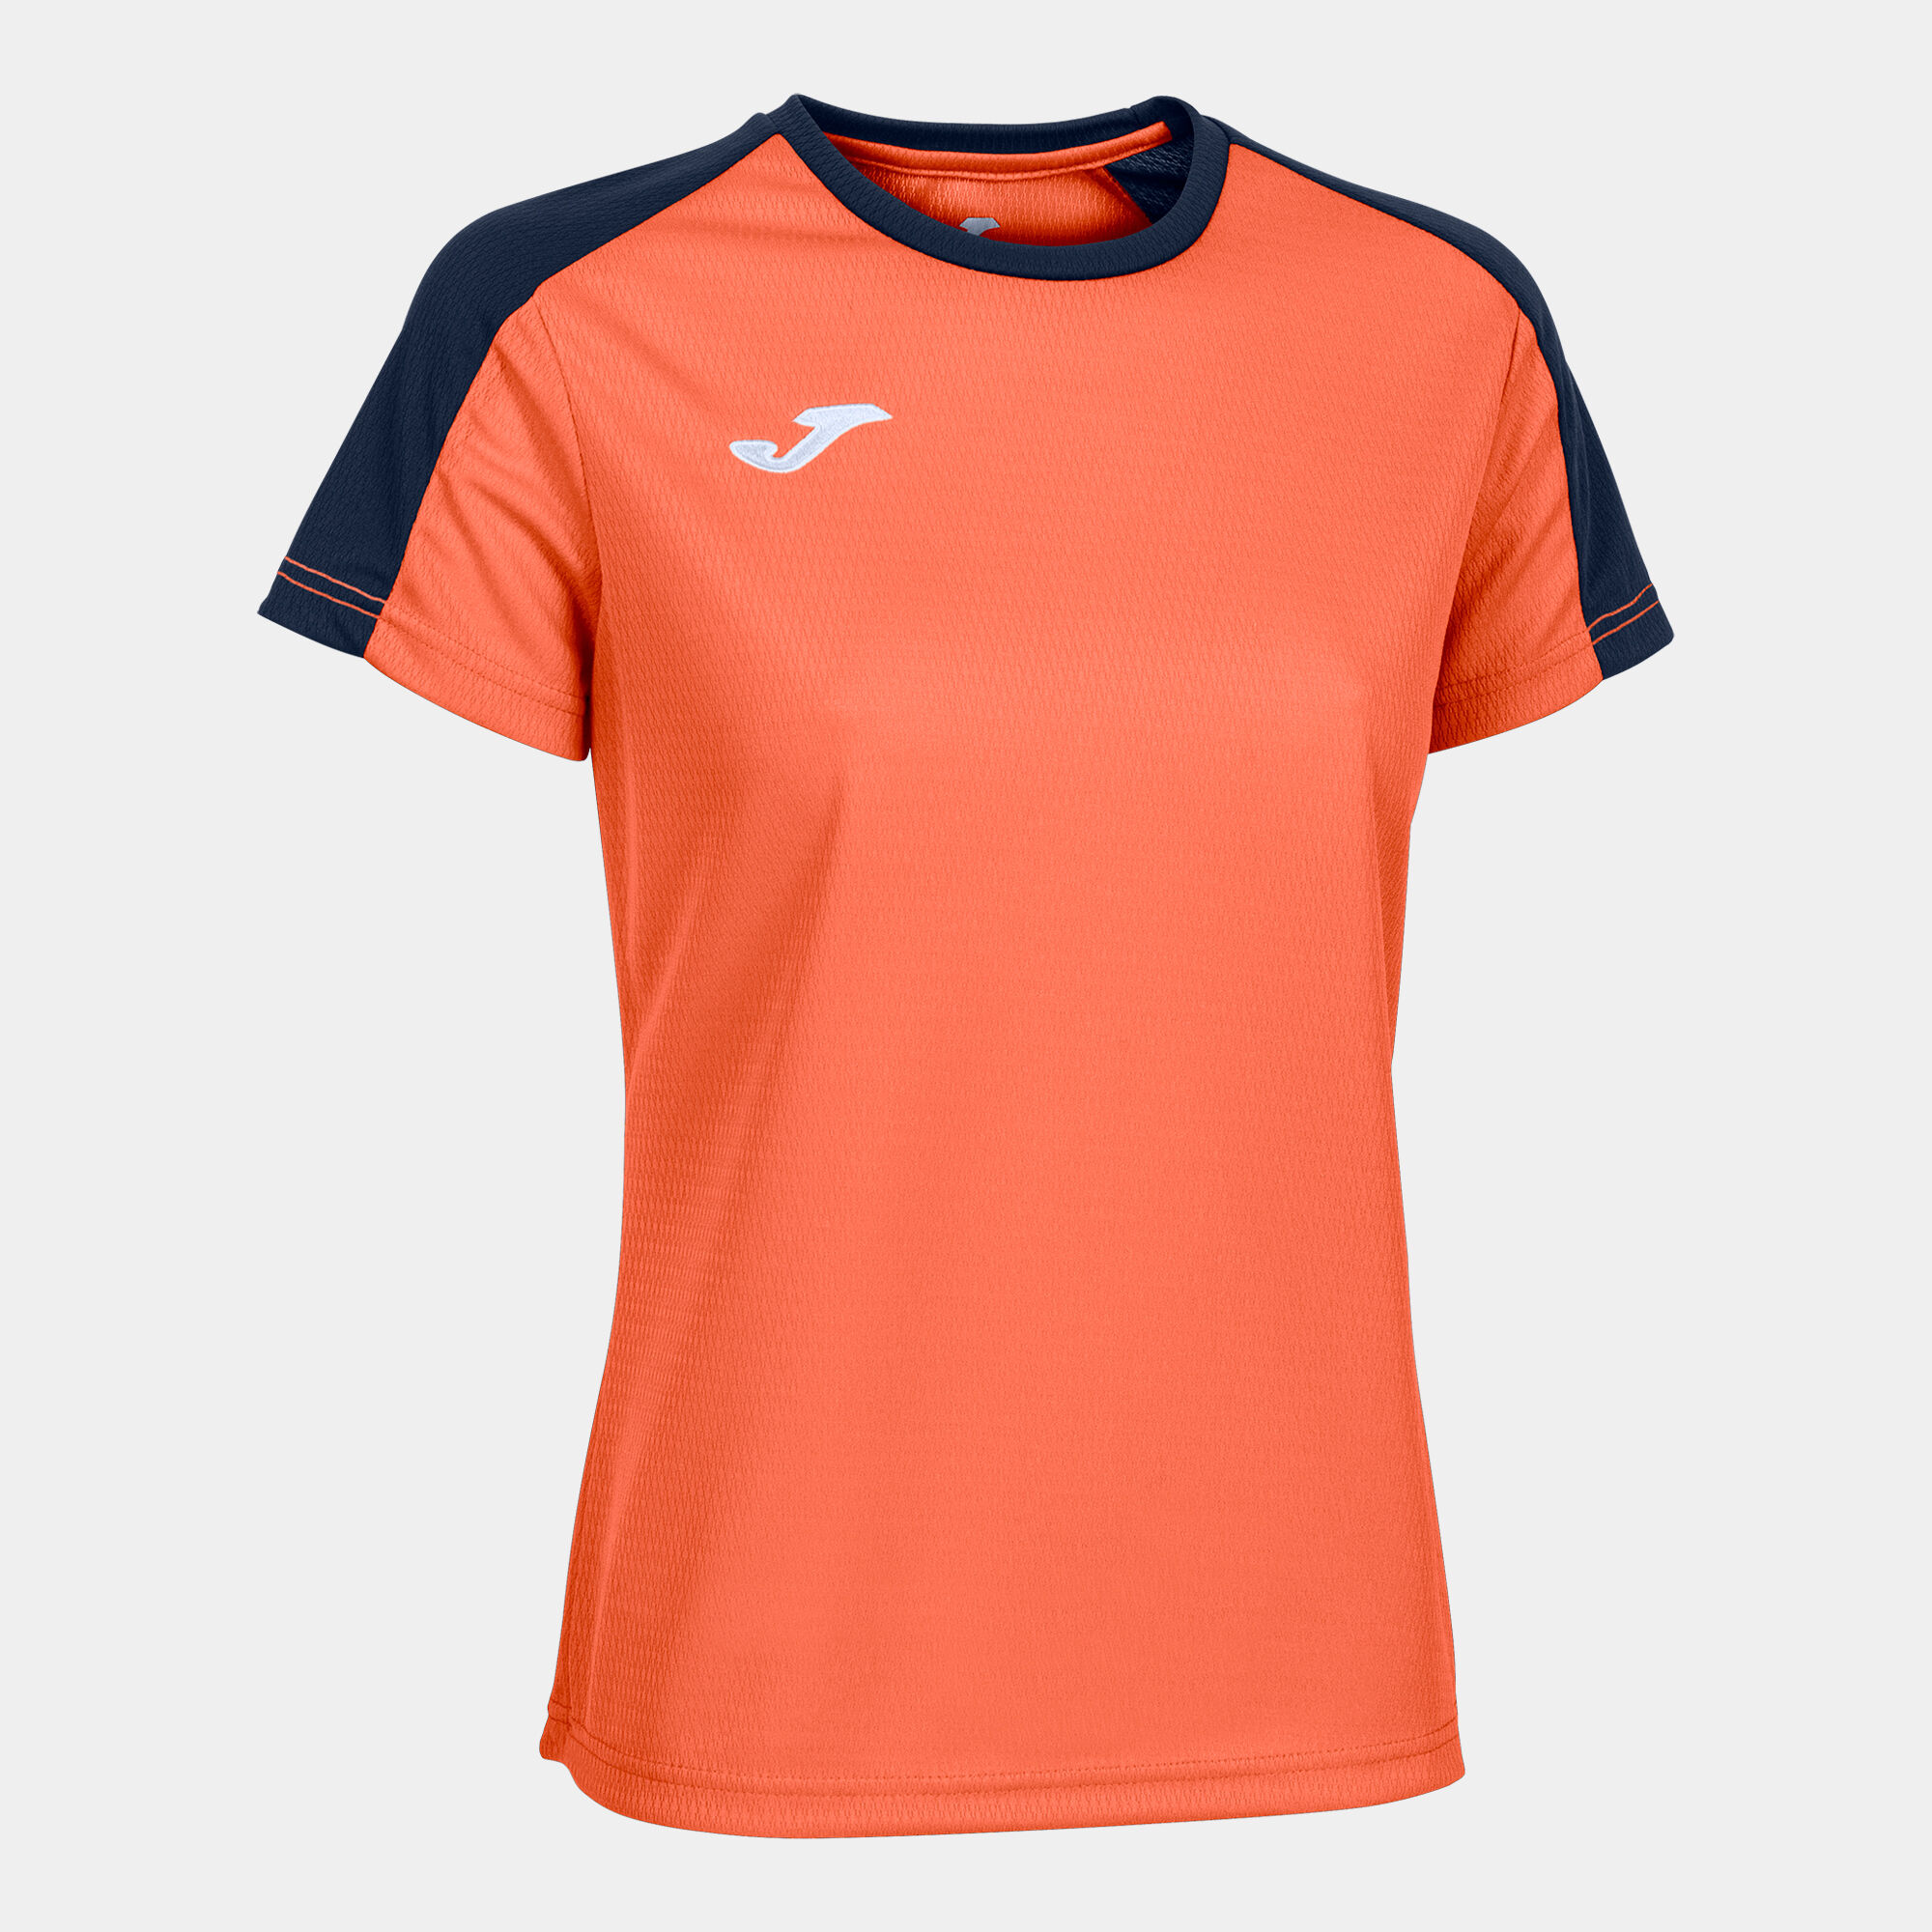 Koszulka z krótkim rękawem kobiety Eco Championship fluorescencyjny pomaranczowy granatowy